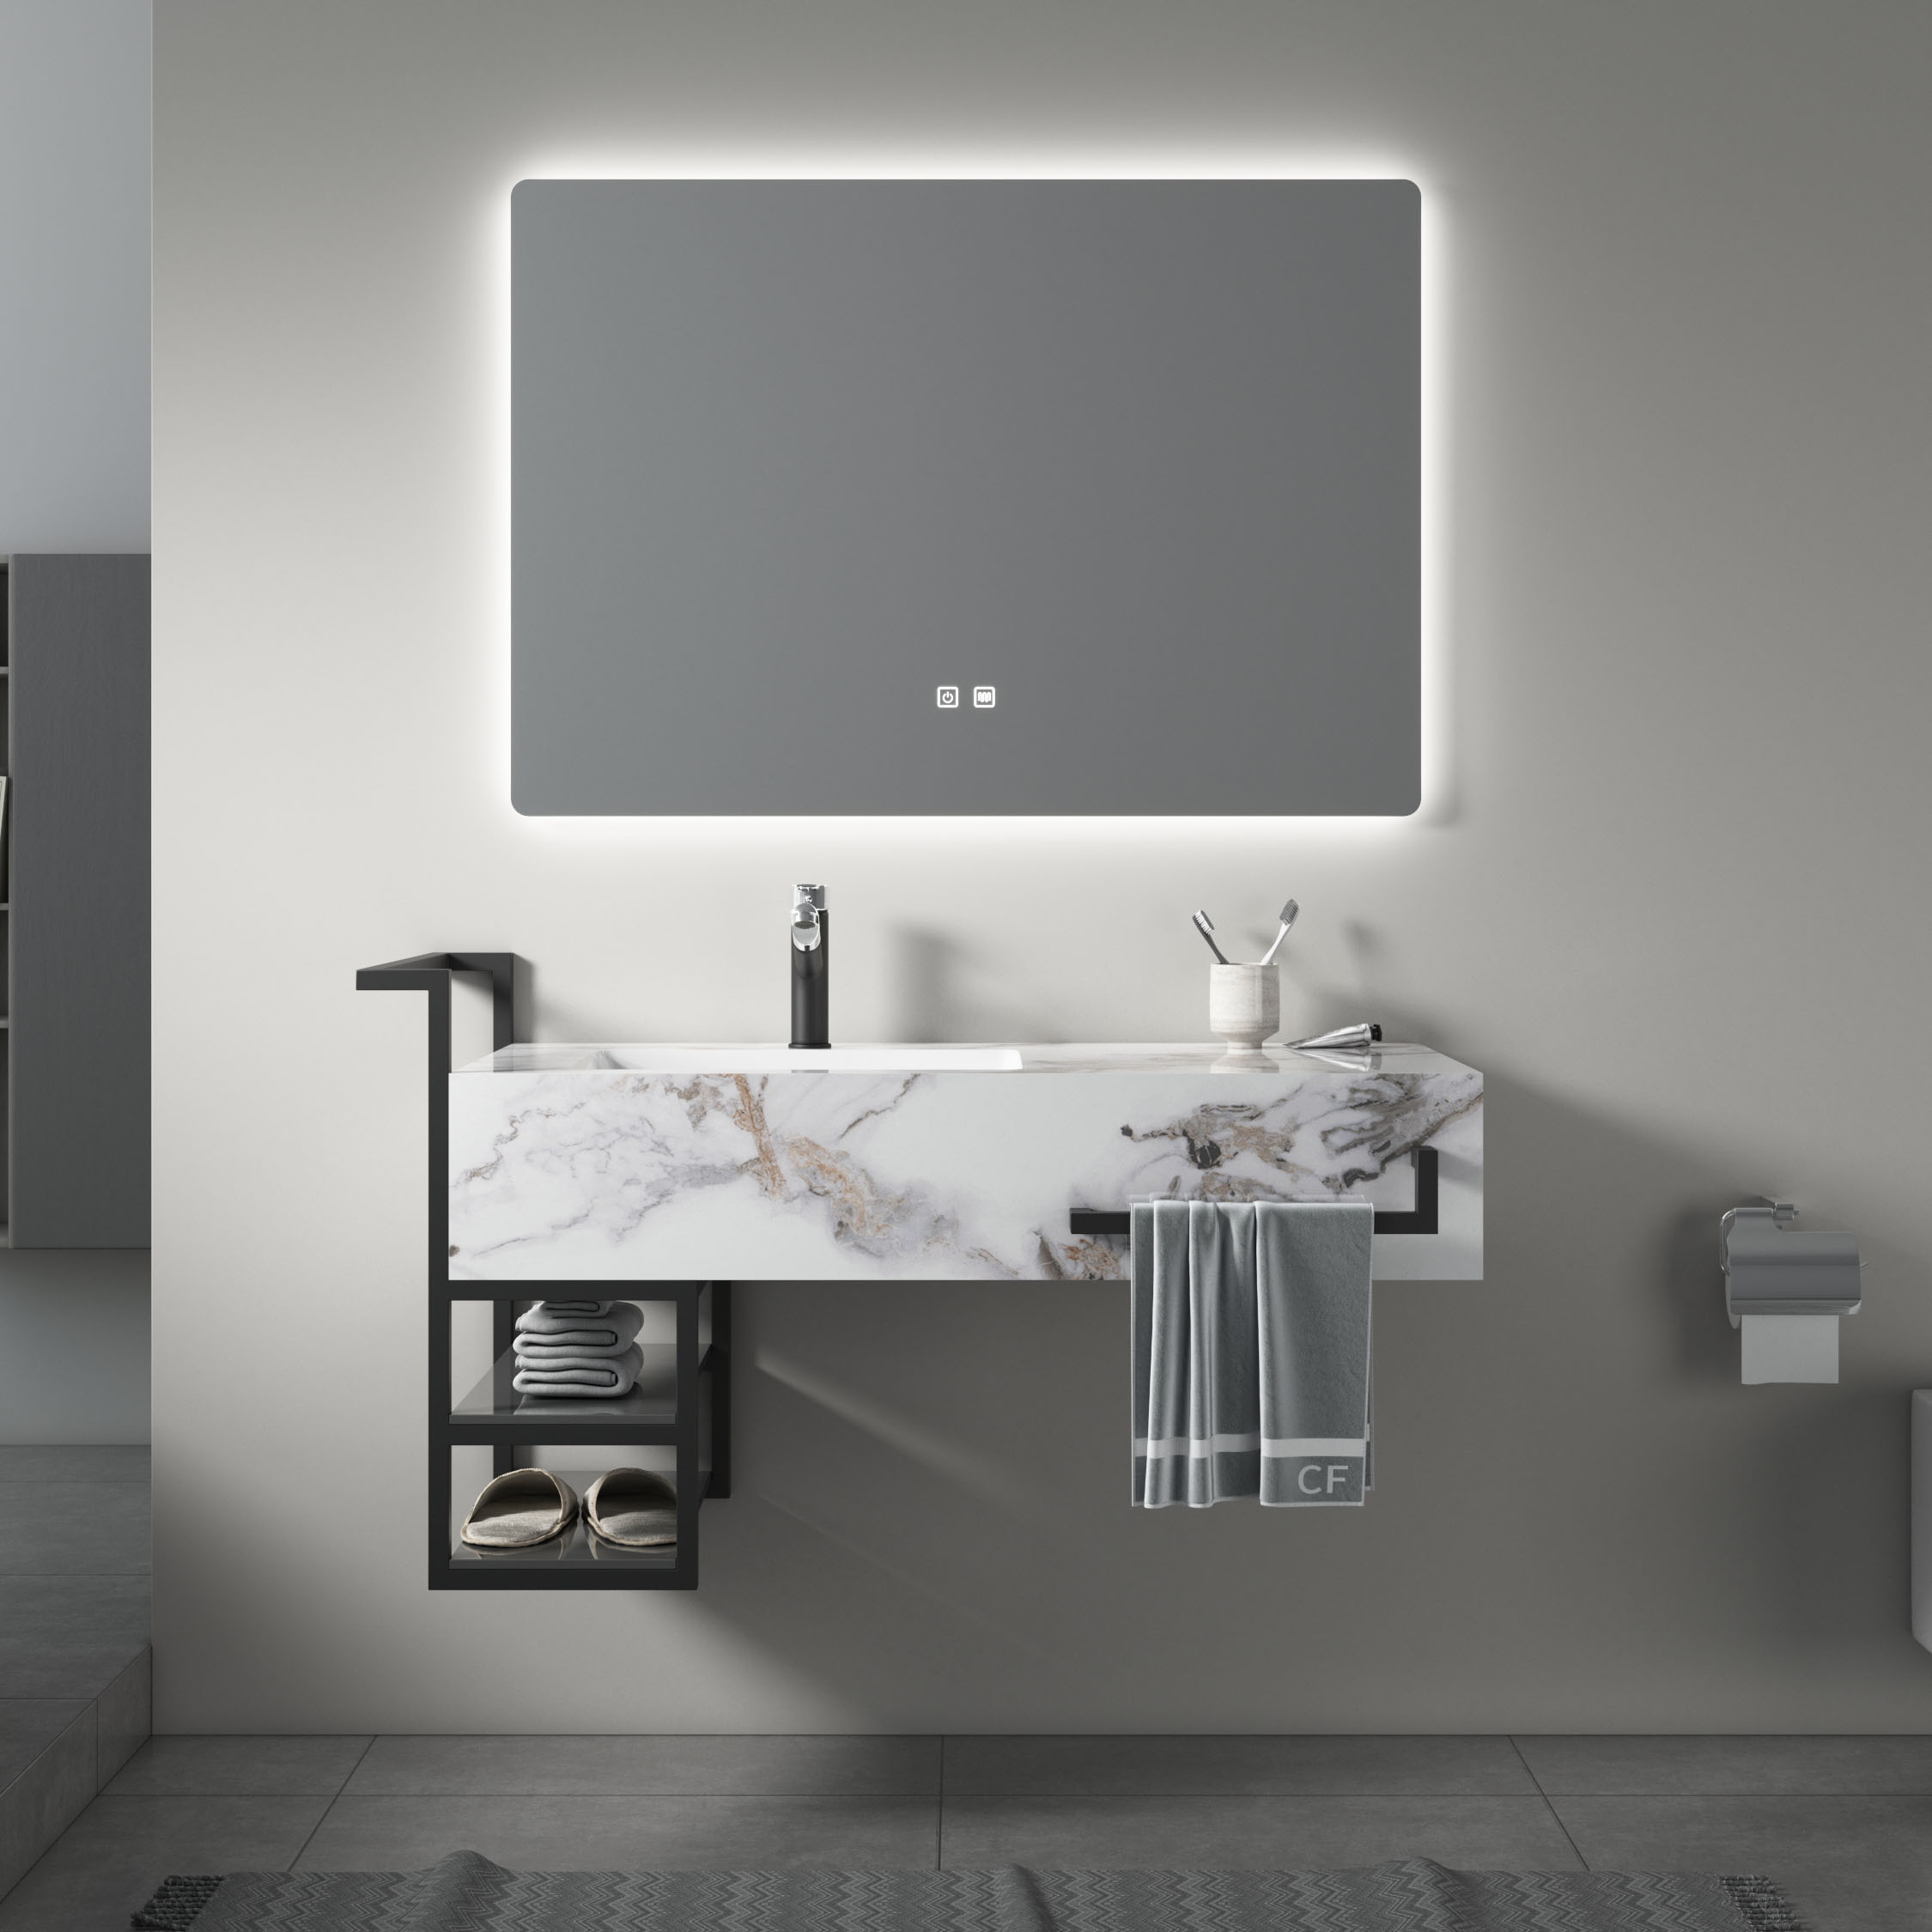 A legkeresettebb új modellek fürdőszobai mosdókagyló világítás fürdőszobai mosdókagyló szállító gyári áron hotel fürdőszobai mosdó